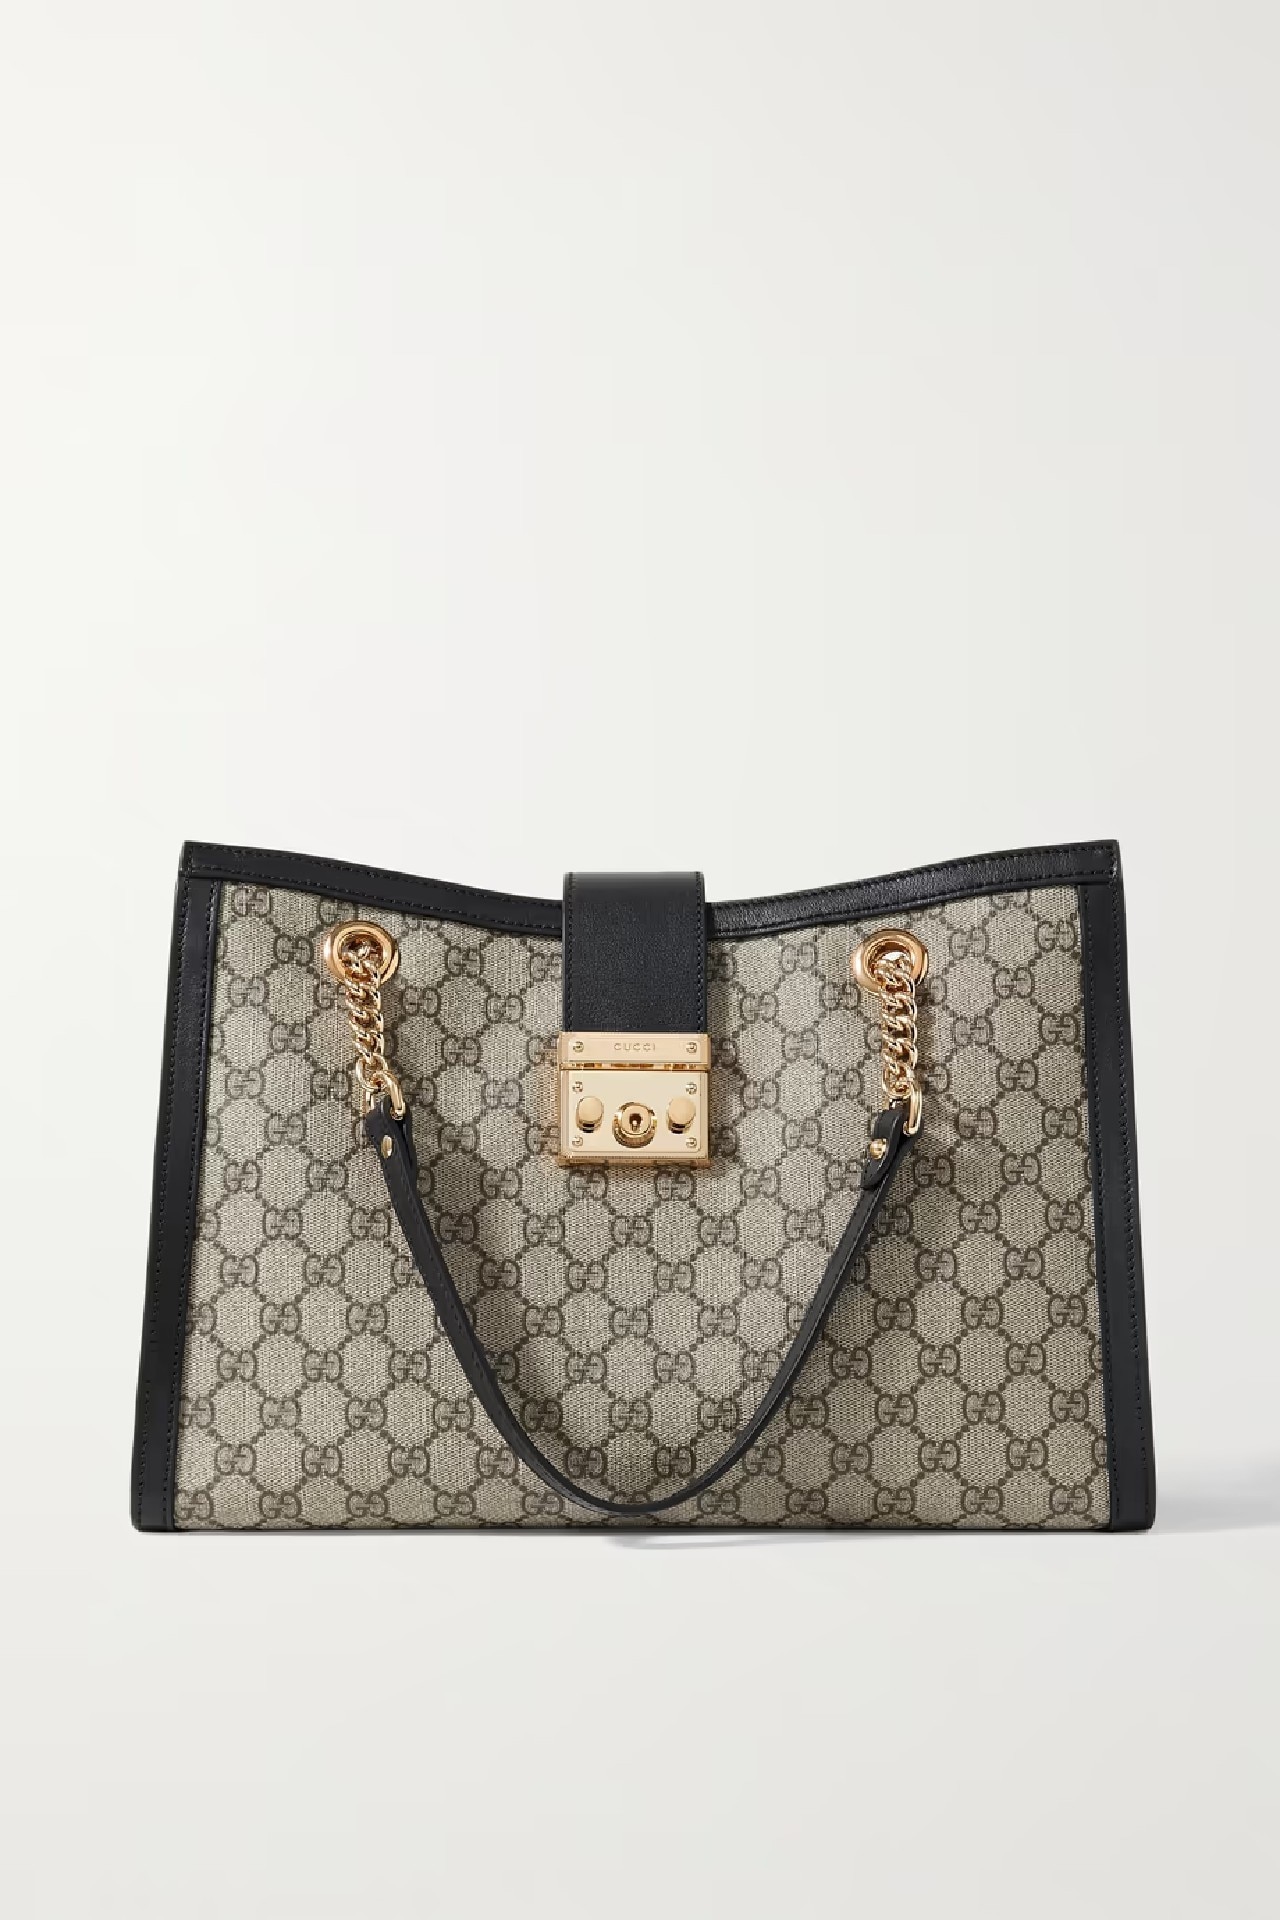 Top Gucci handbags for 2022